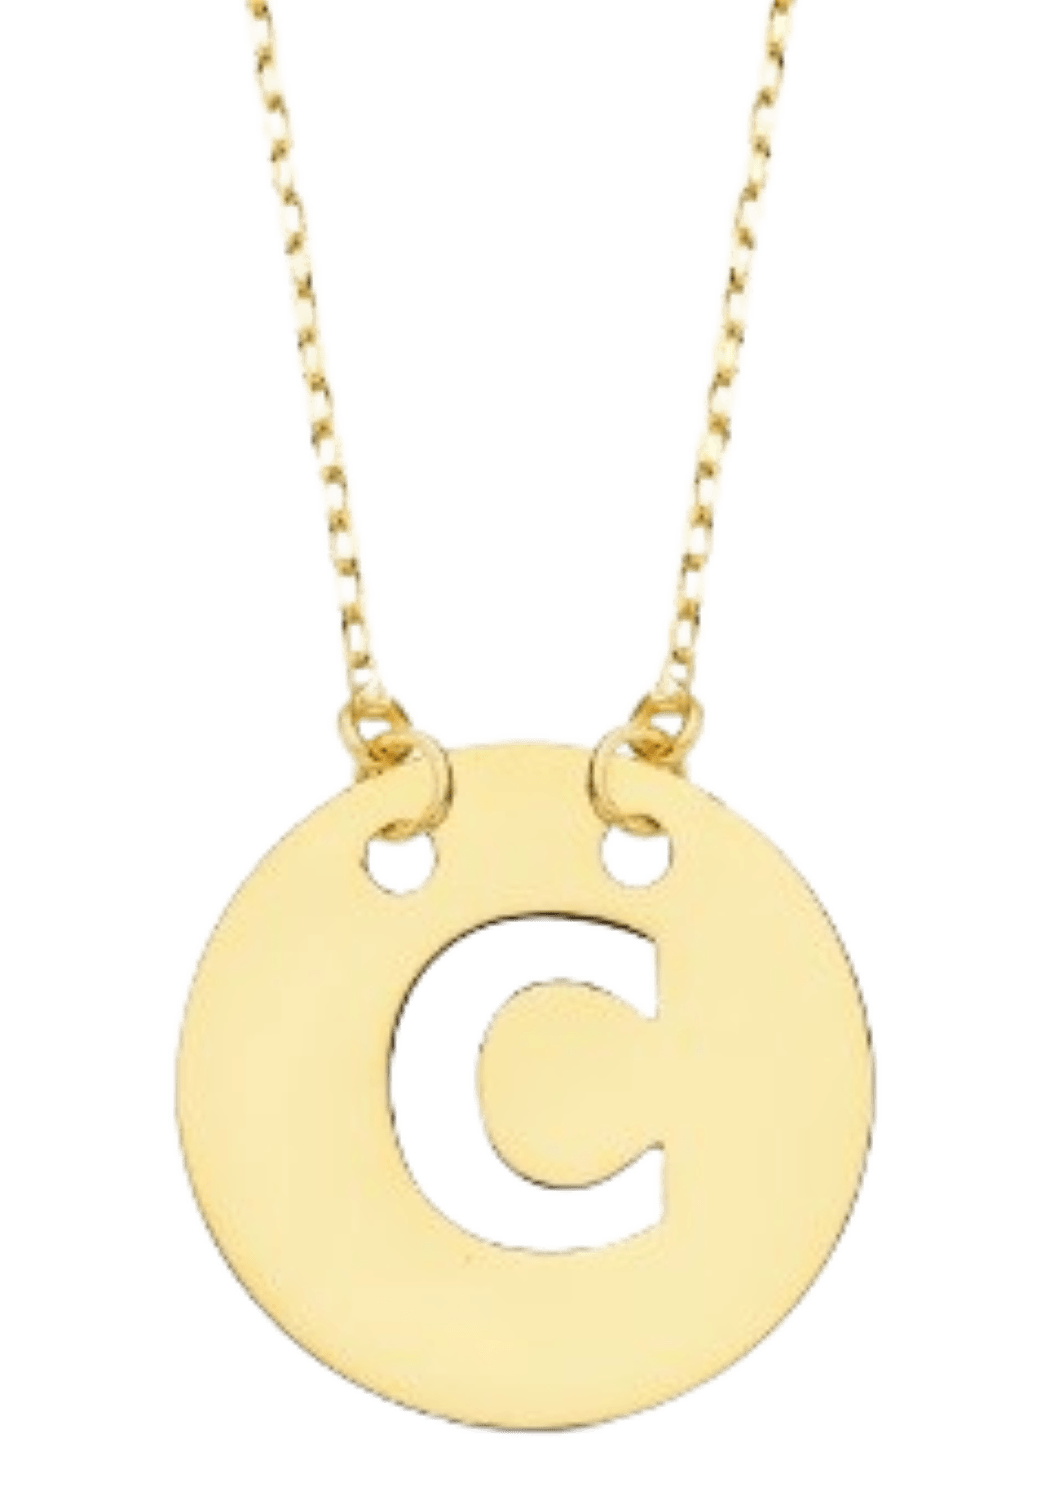 Collier "Alpha", fine chaine ajustable et pendentif rond ajouré initiale, en or jaune 18 carats - Maison Gabriel